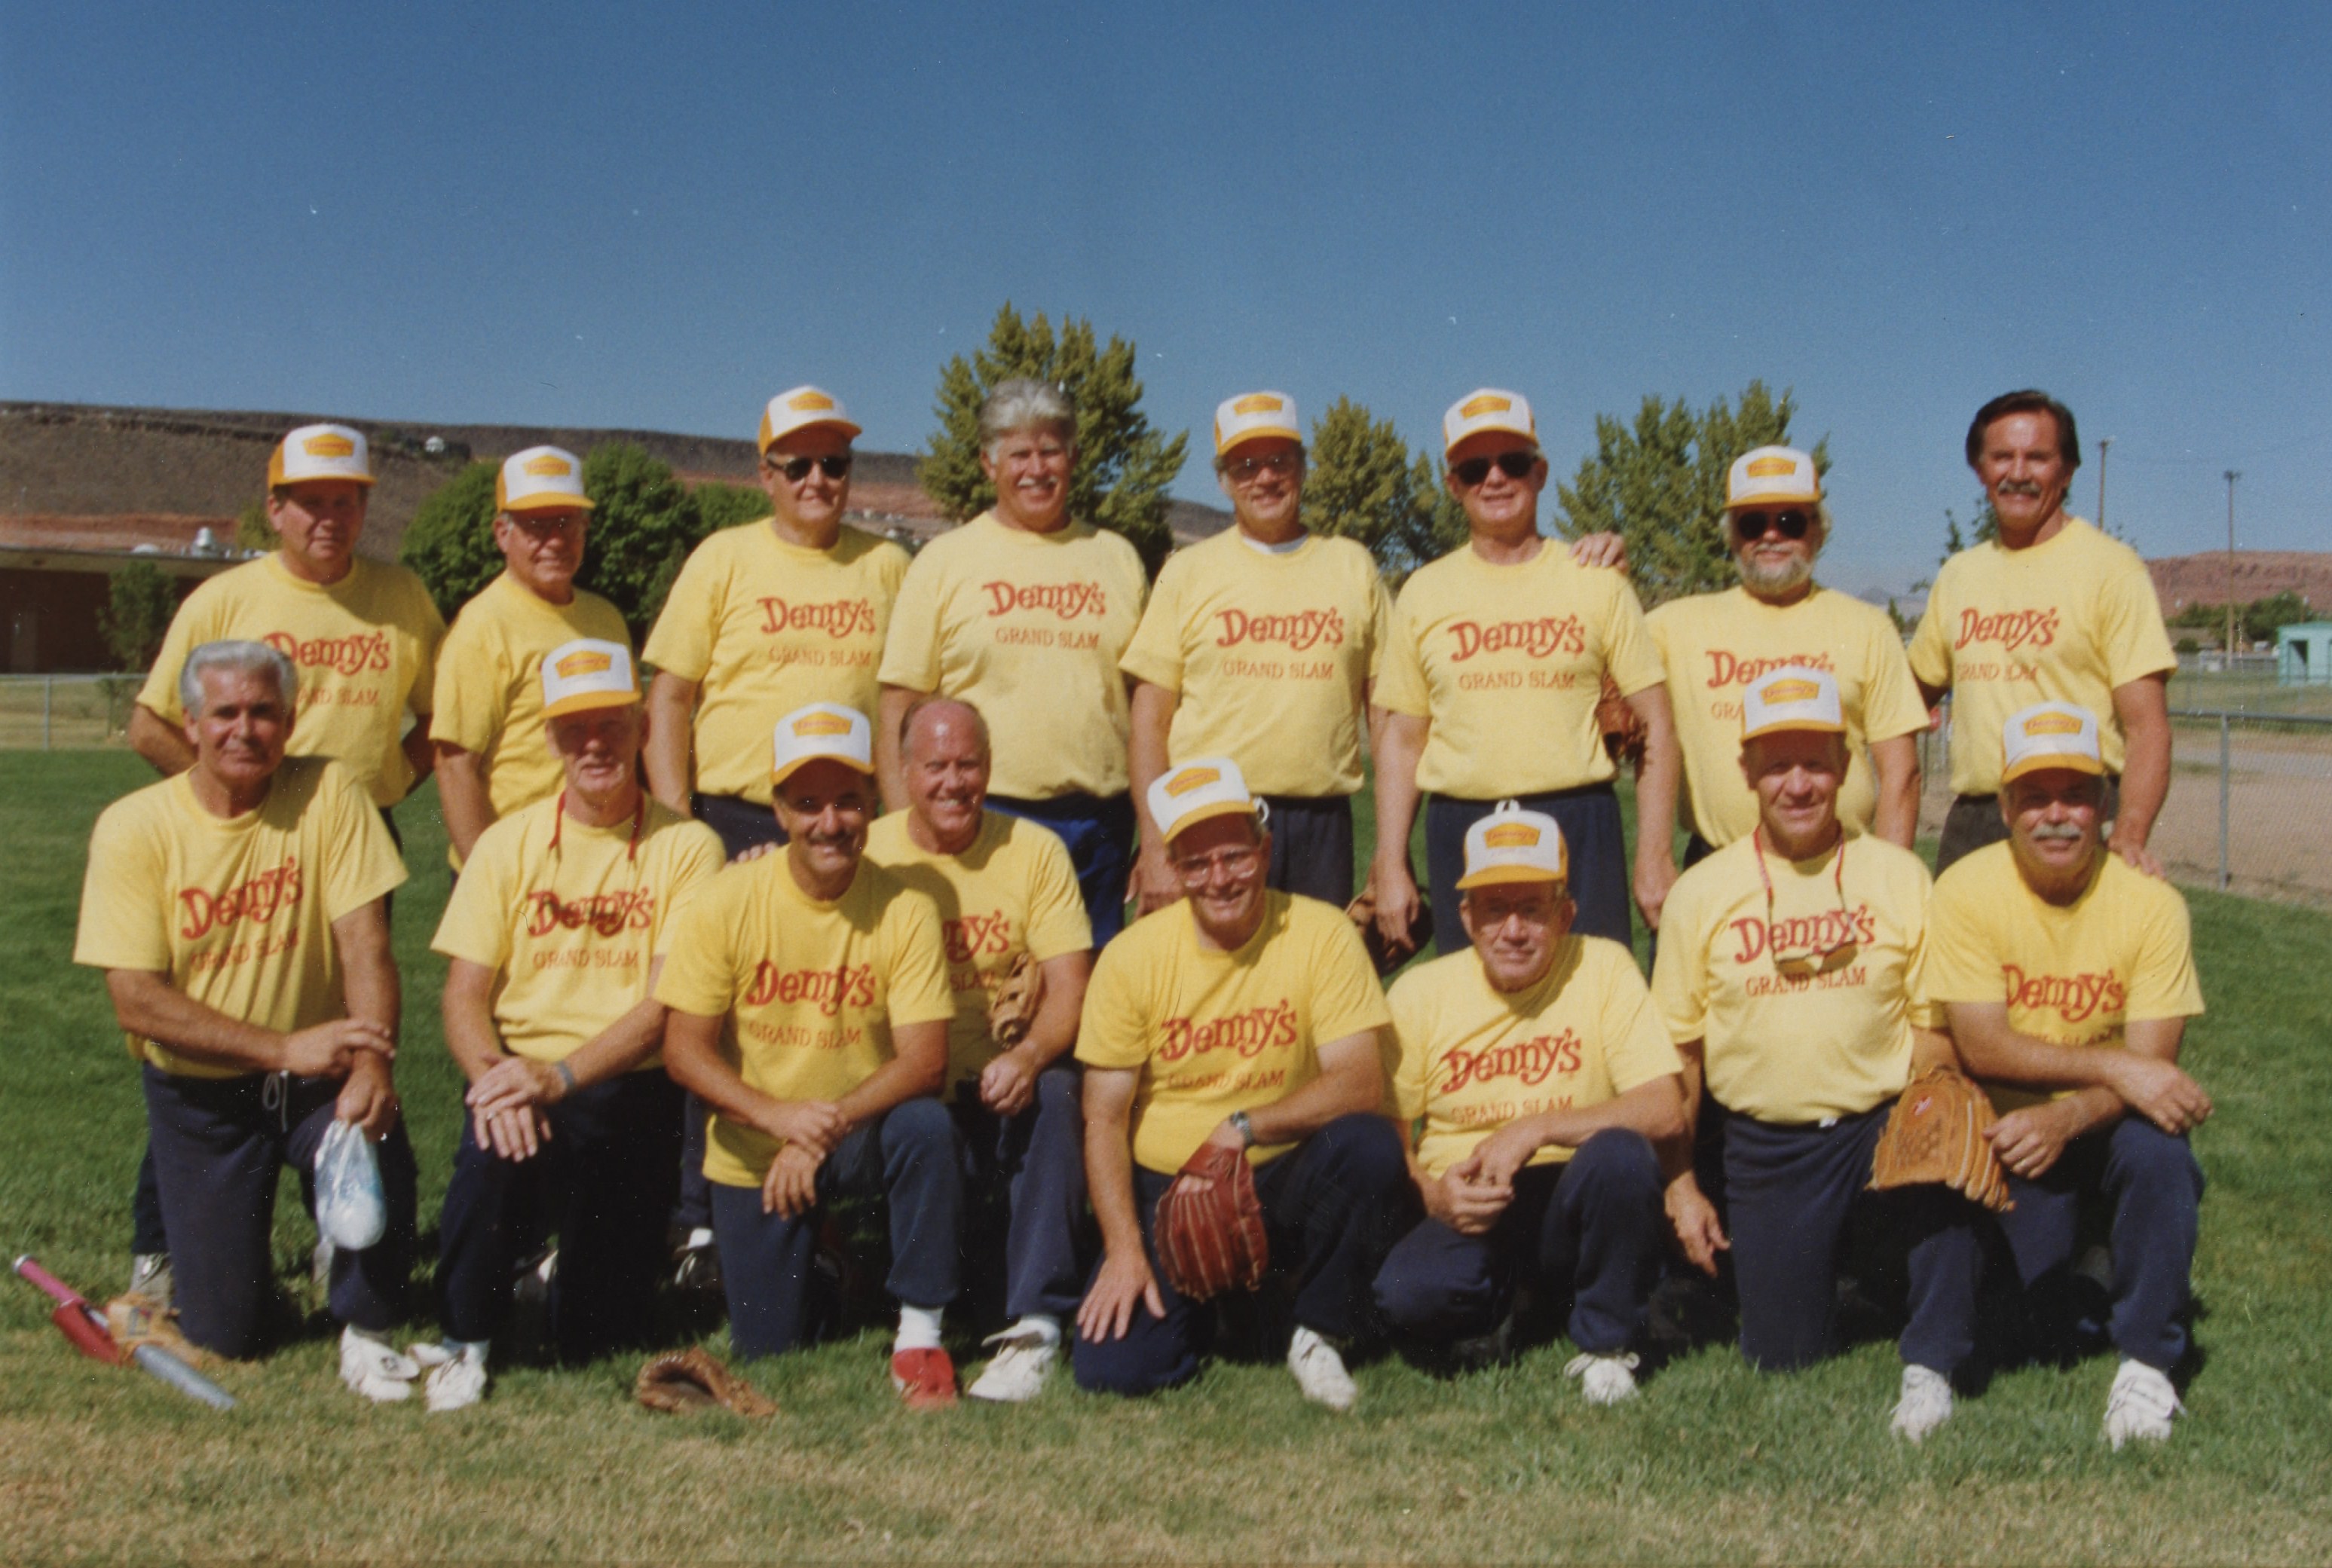 Denny's Grand Slam softball team